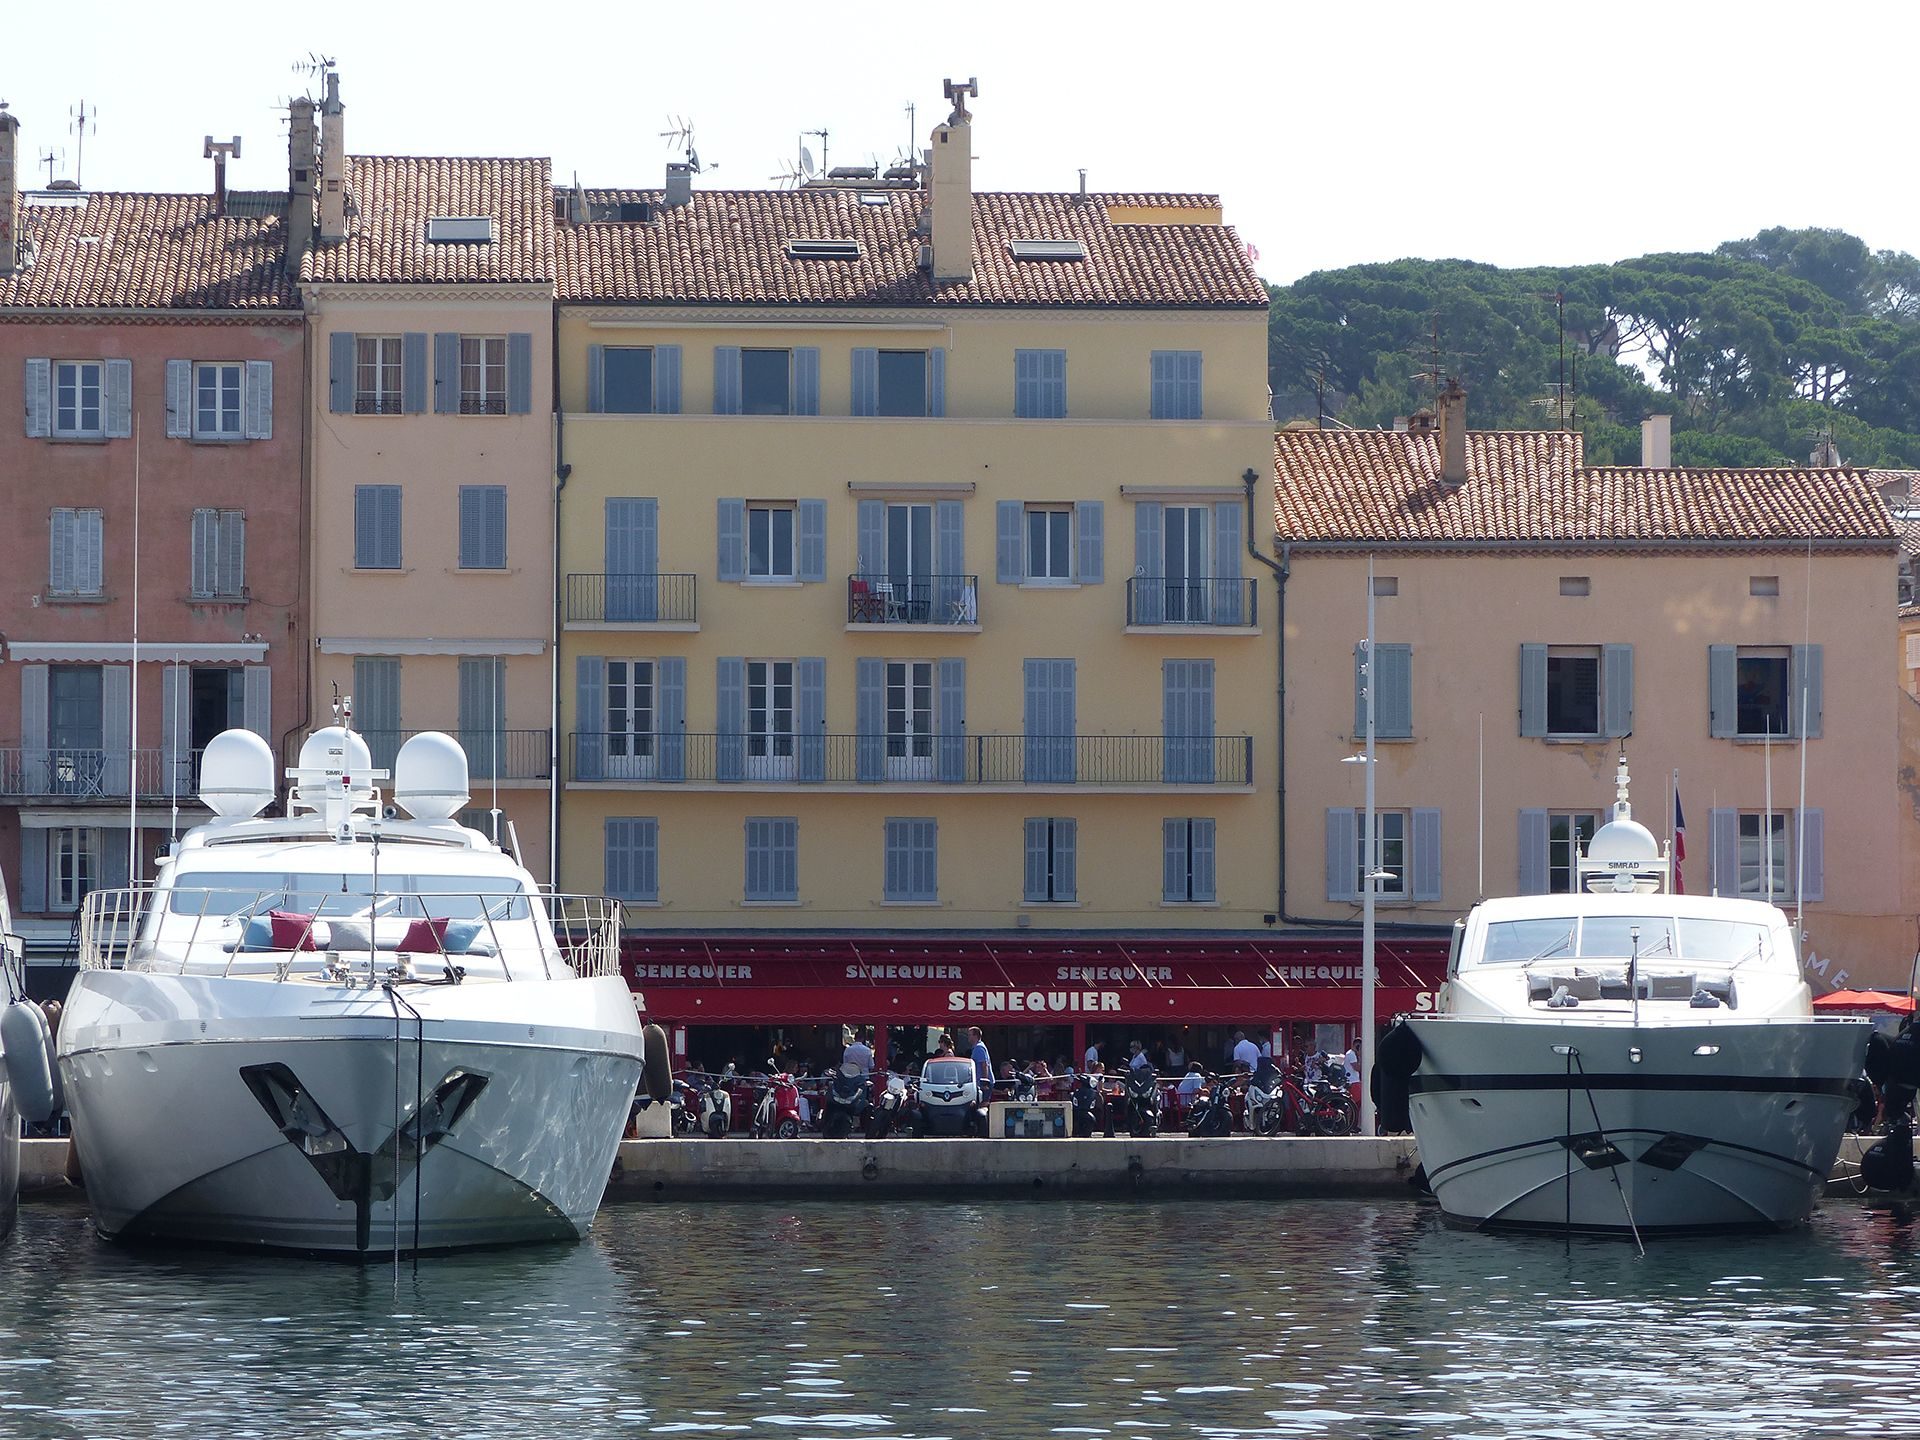 St Tropez Tour l Port Grimaud Tour l Liven Up Monaco